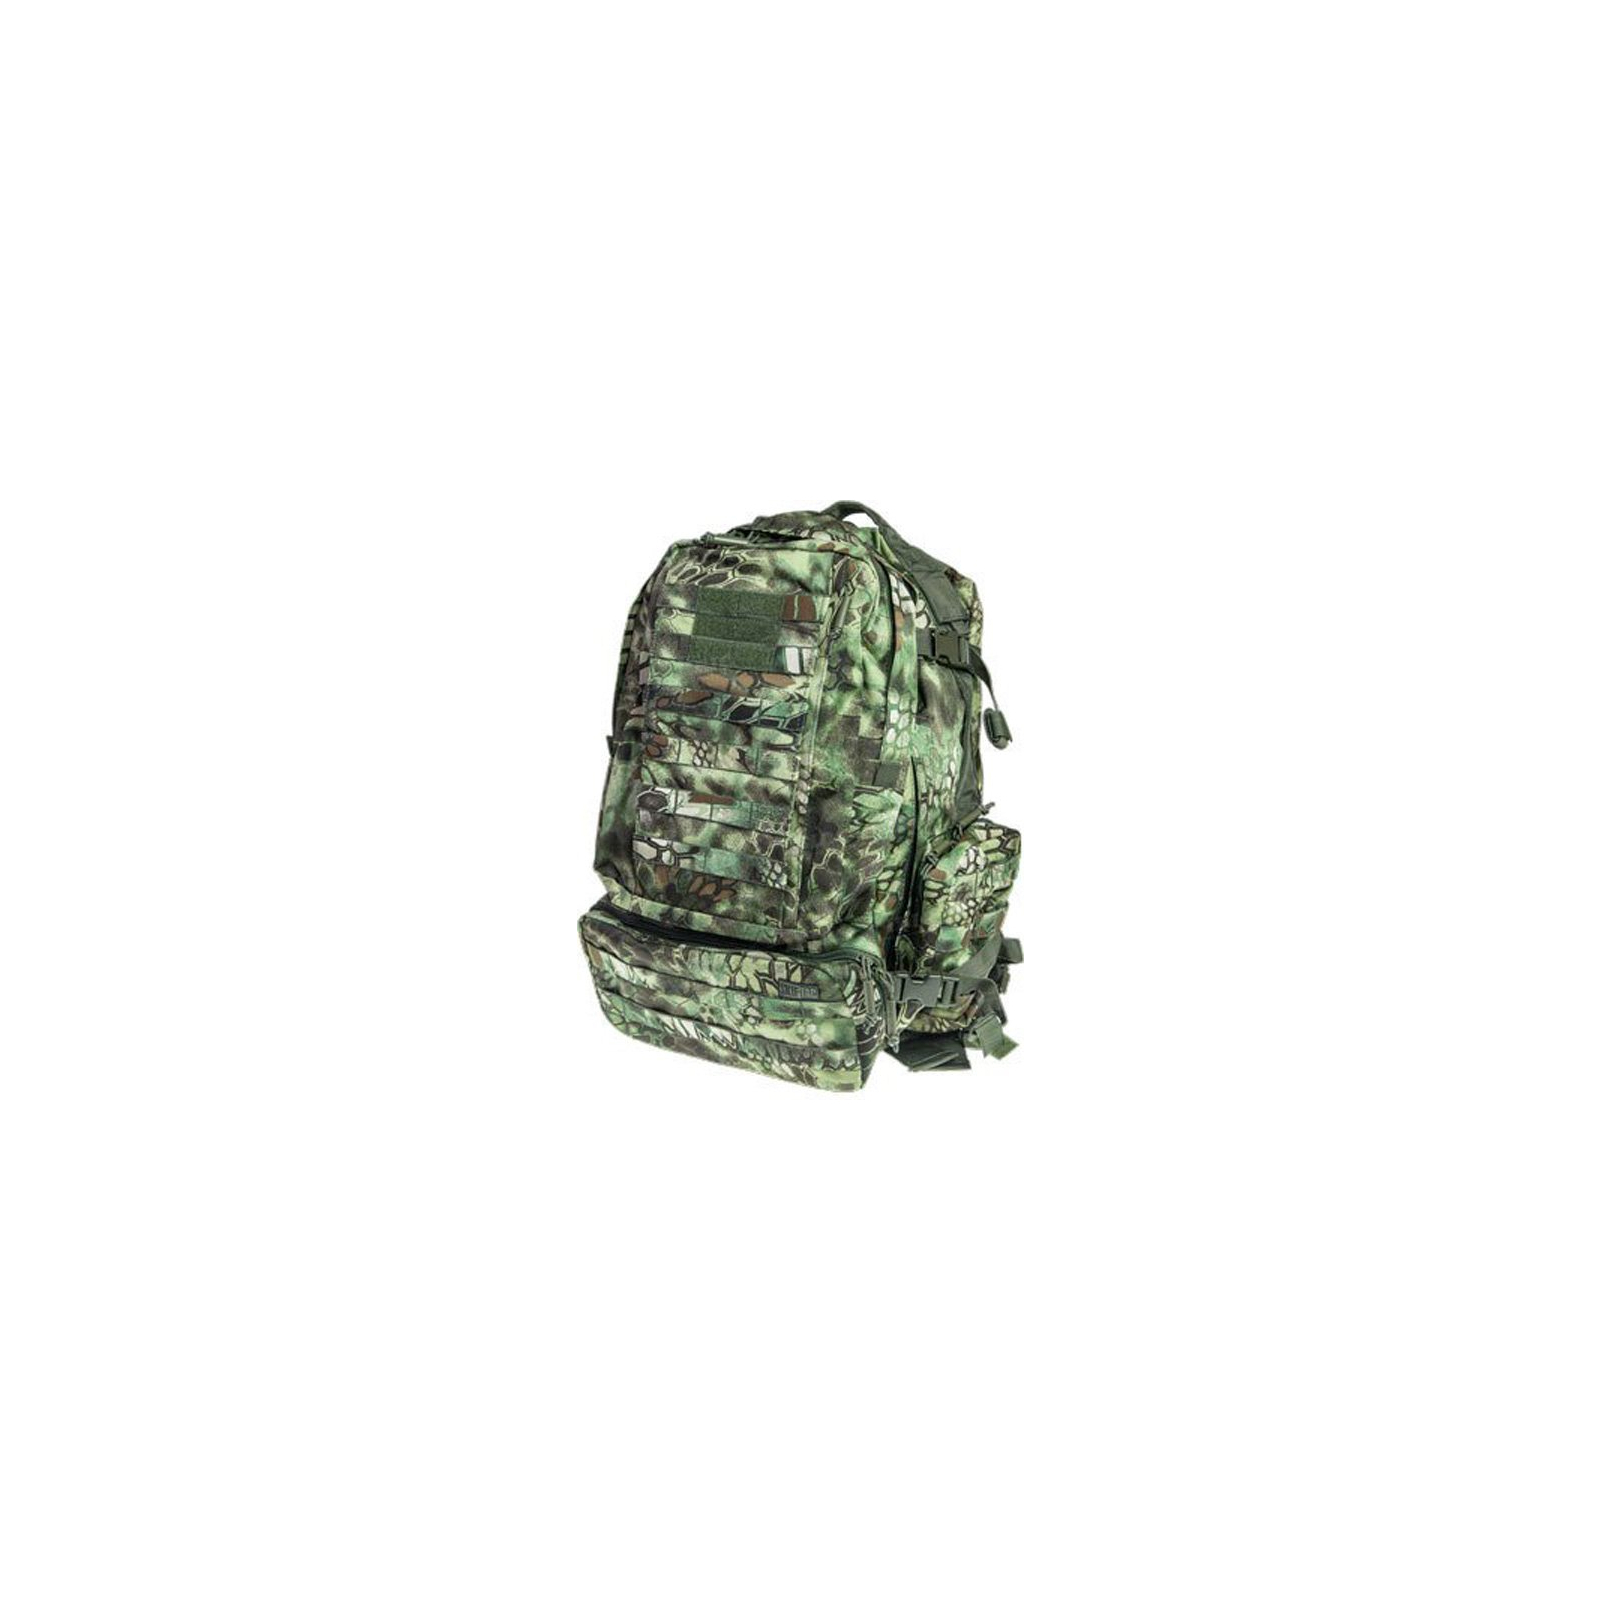 Рюкзак туристический Skif Tac тактический 3-х дневный 45 литров kryptek green (2795.02.55)